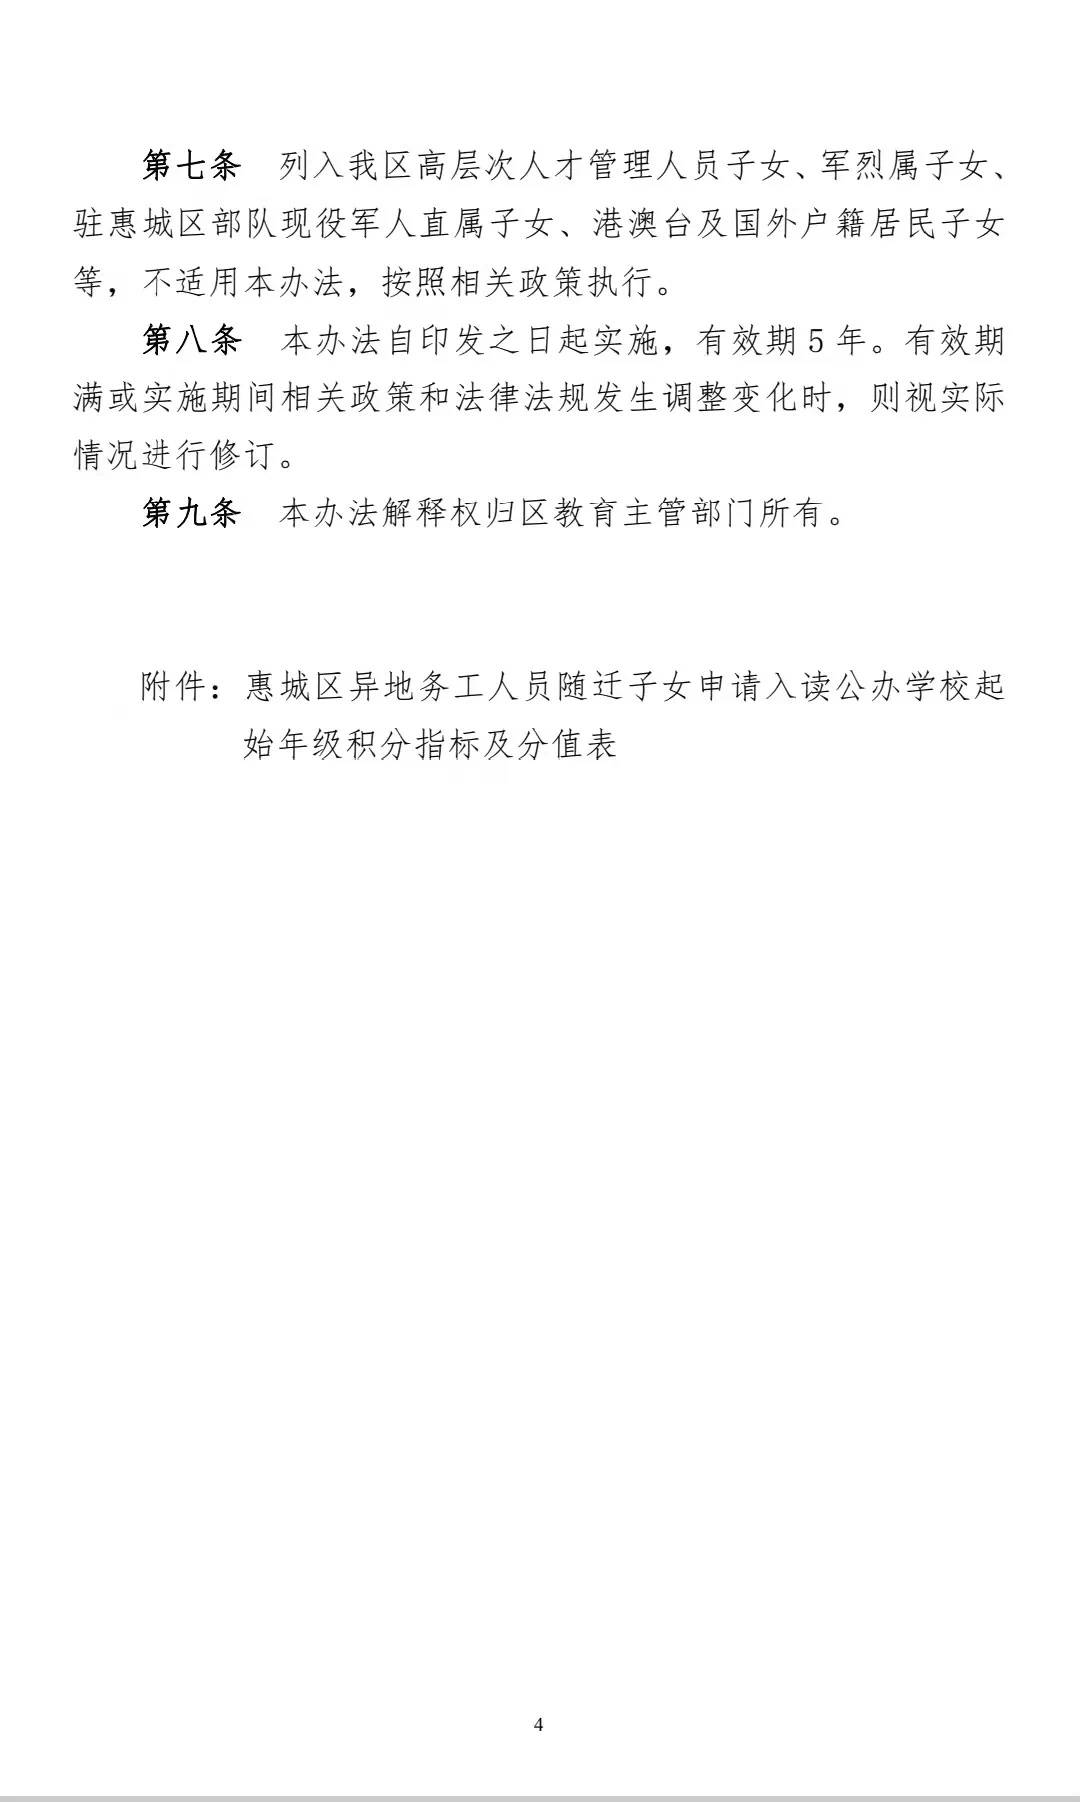 关于随迁子女积分入学,惠城区教育局公开征求意见